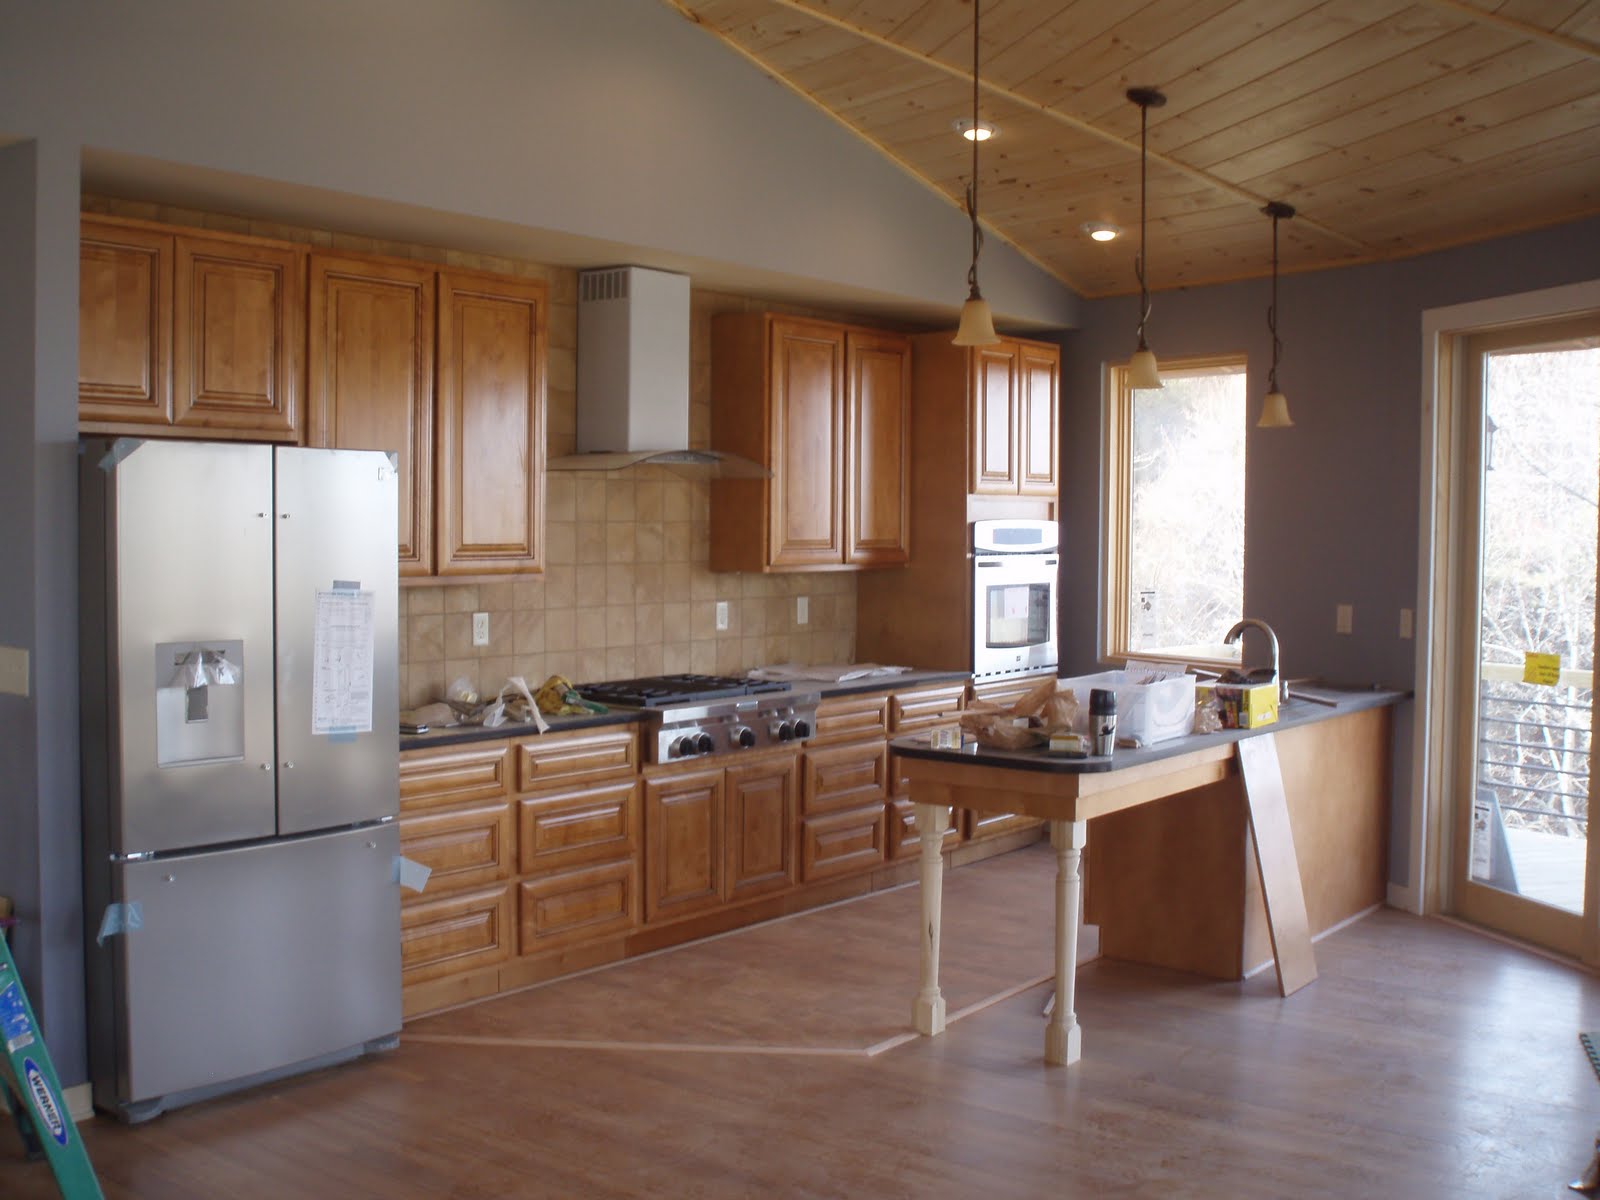 sloped kitchen ceiling | Kitchen, Kitchen ceiling, Home